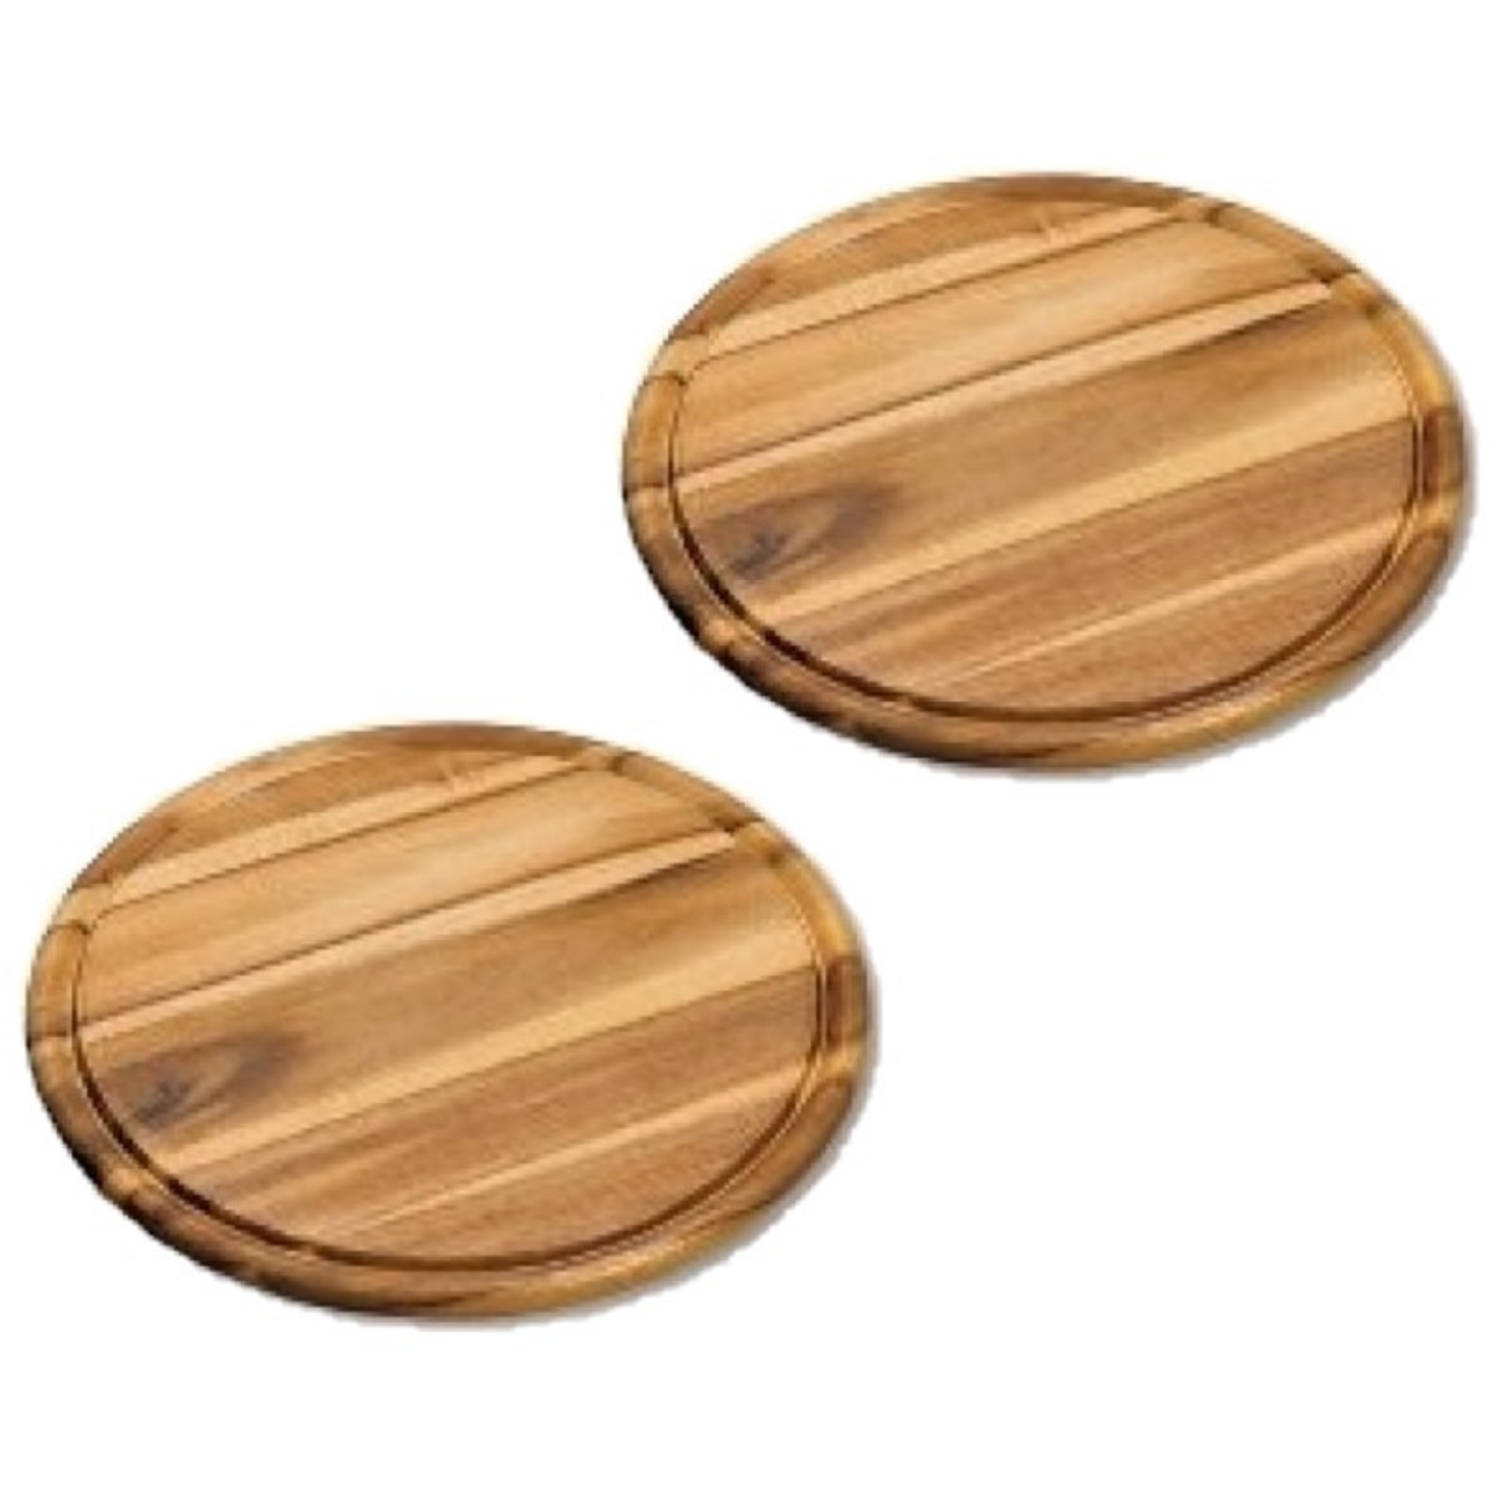 2x stuks houten broodplanken/serveerplanken rond met sapgroef 30 cm - Snijplanken/serveerplanken van hout